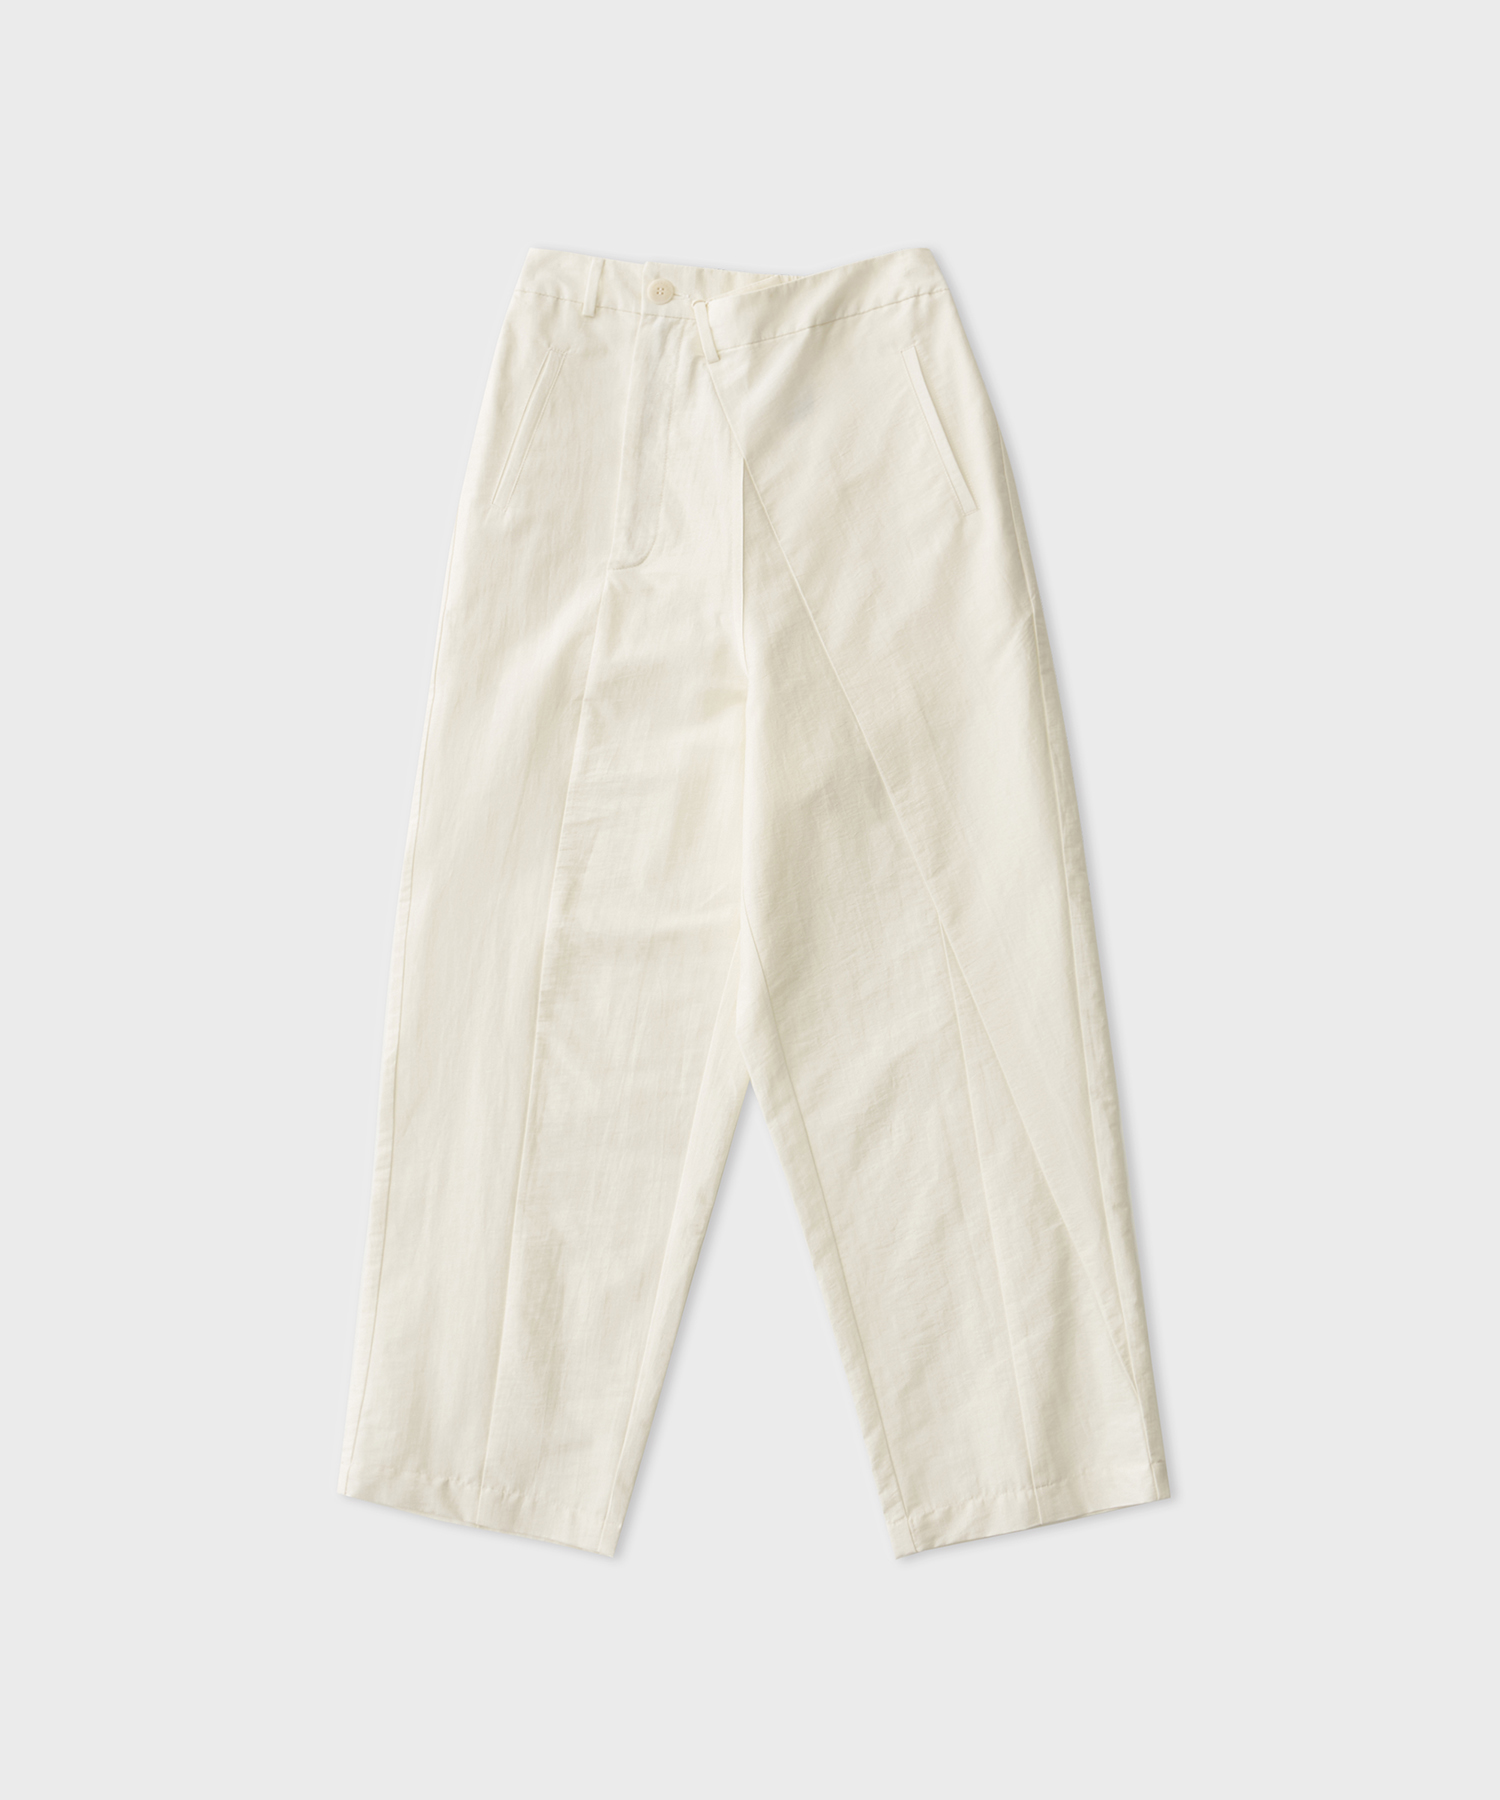 Draped Tailoring Pants (White)